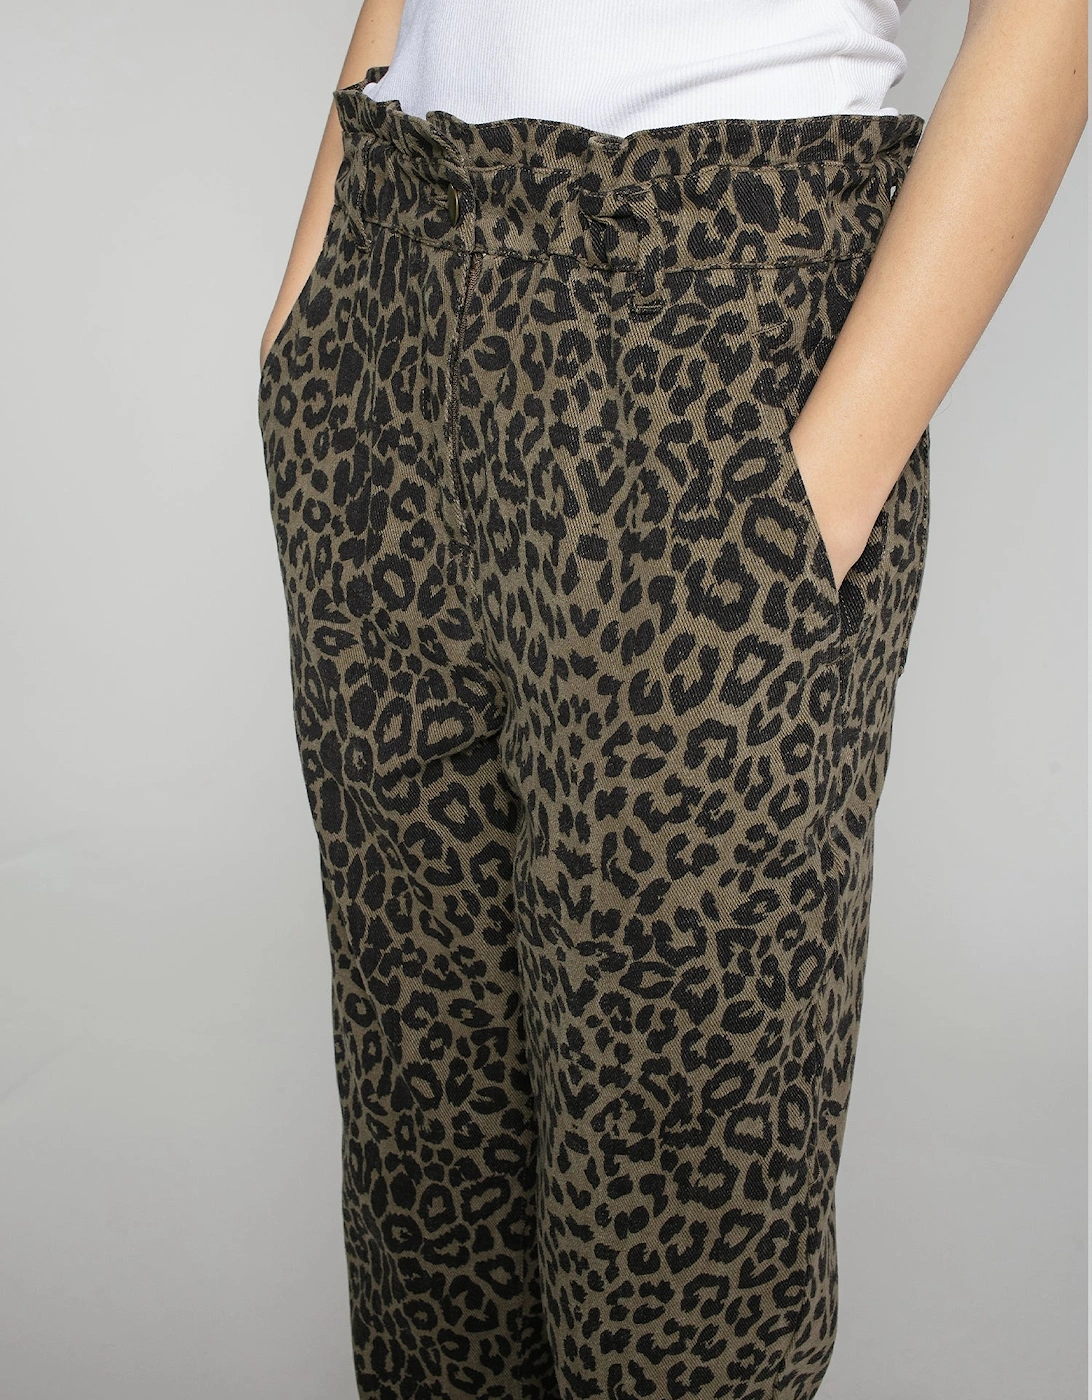 Caroline Leopard Trousers in Khaki